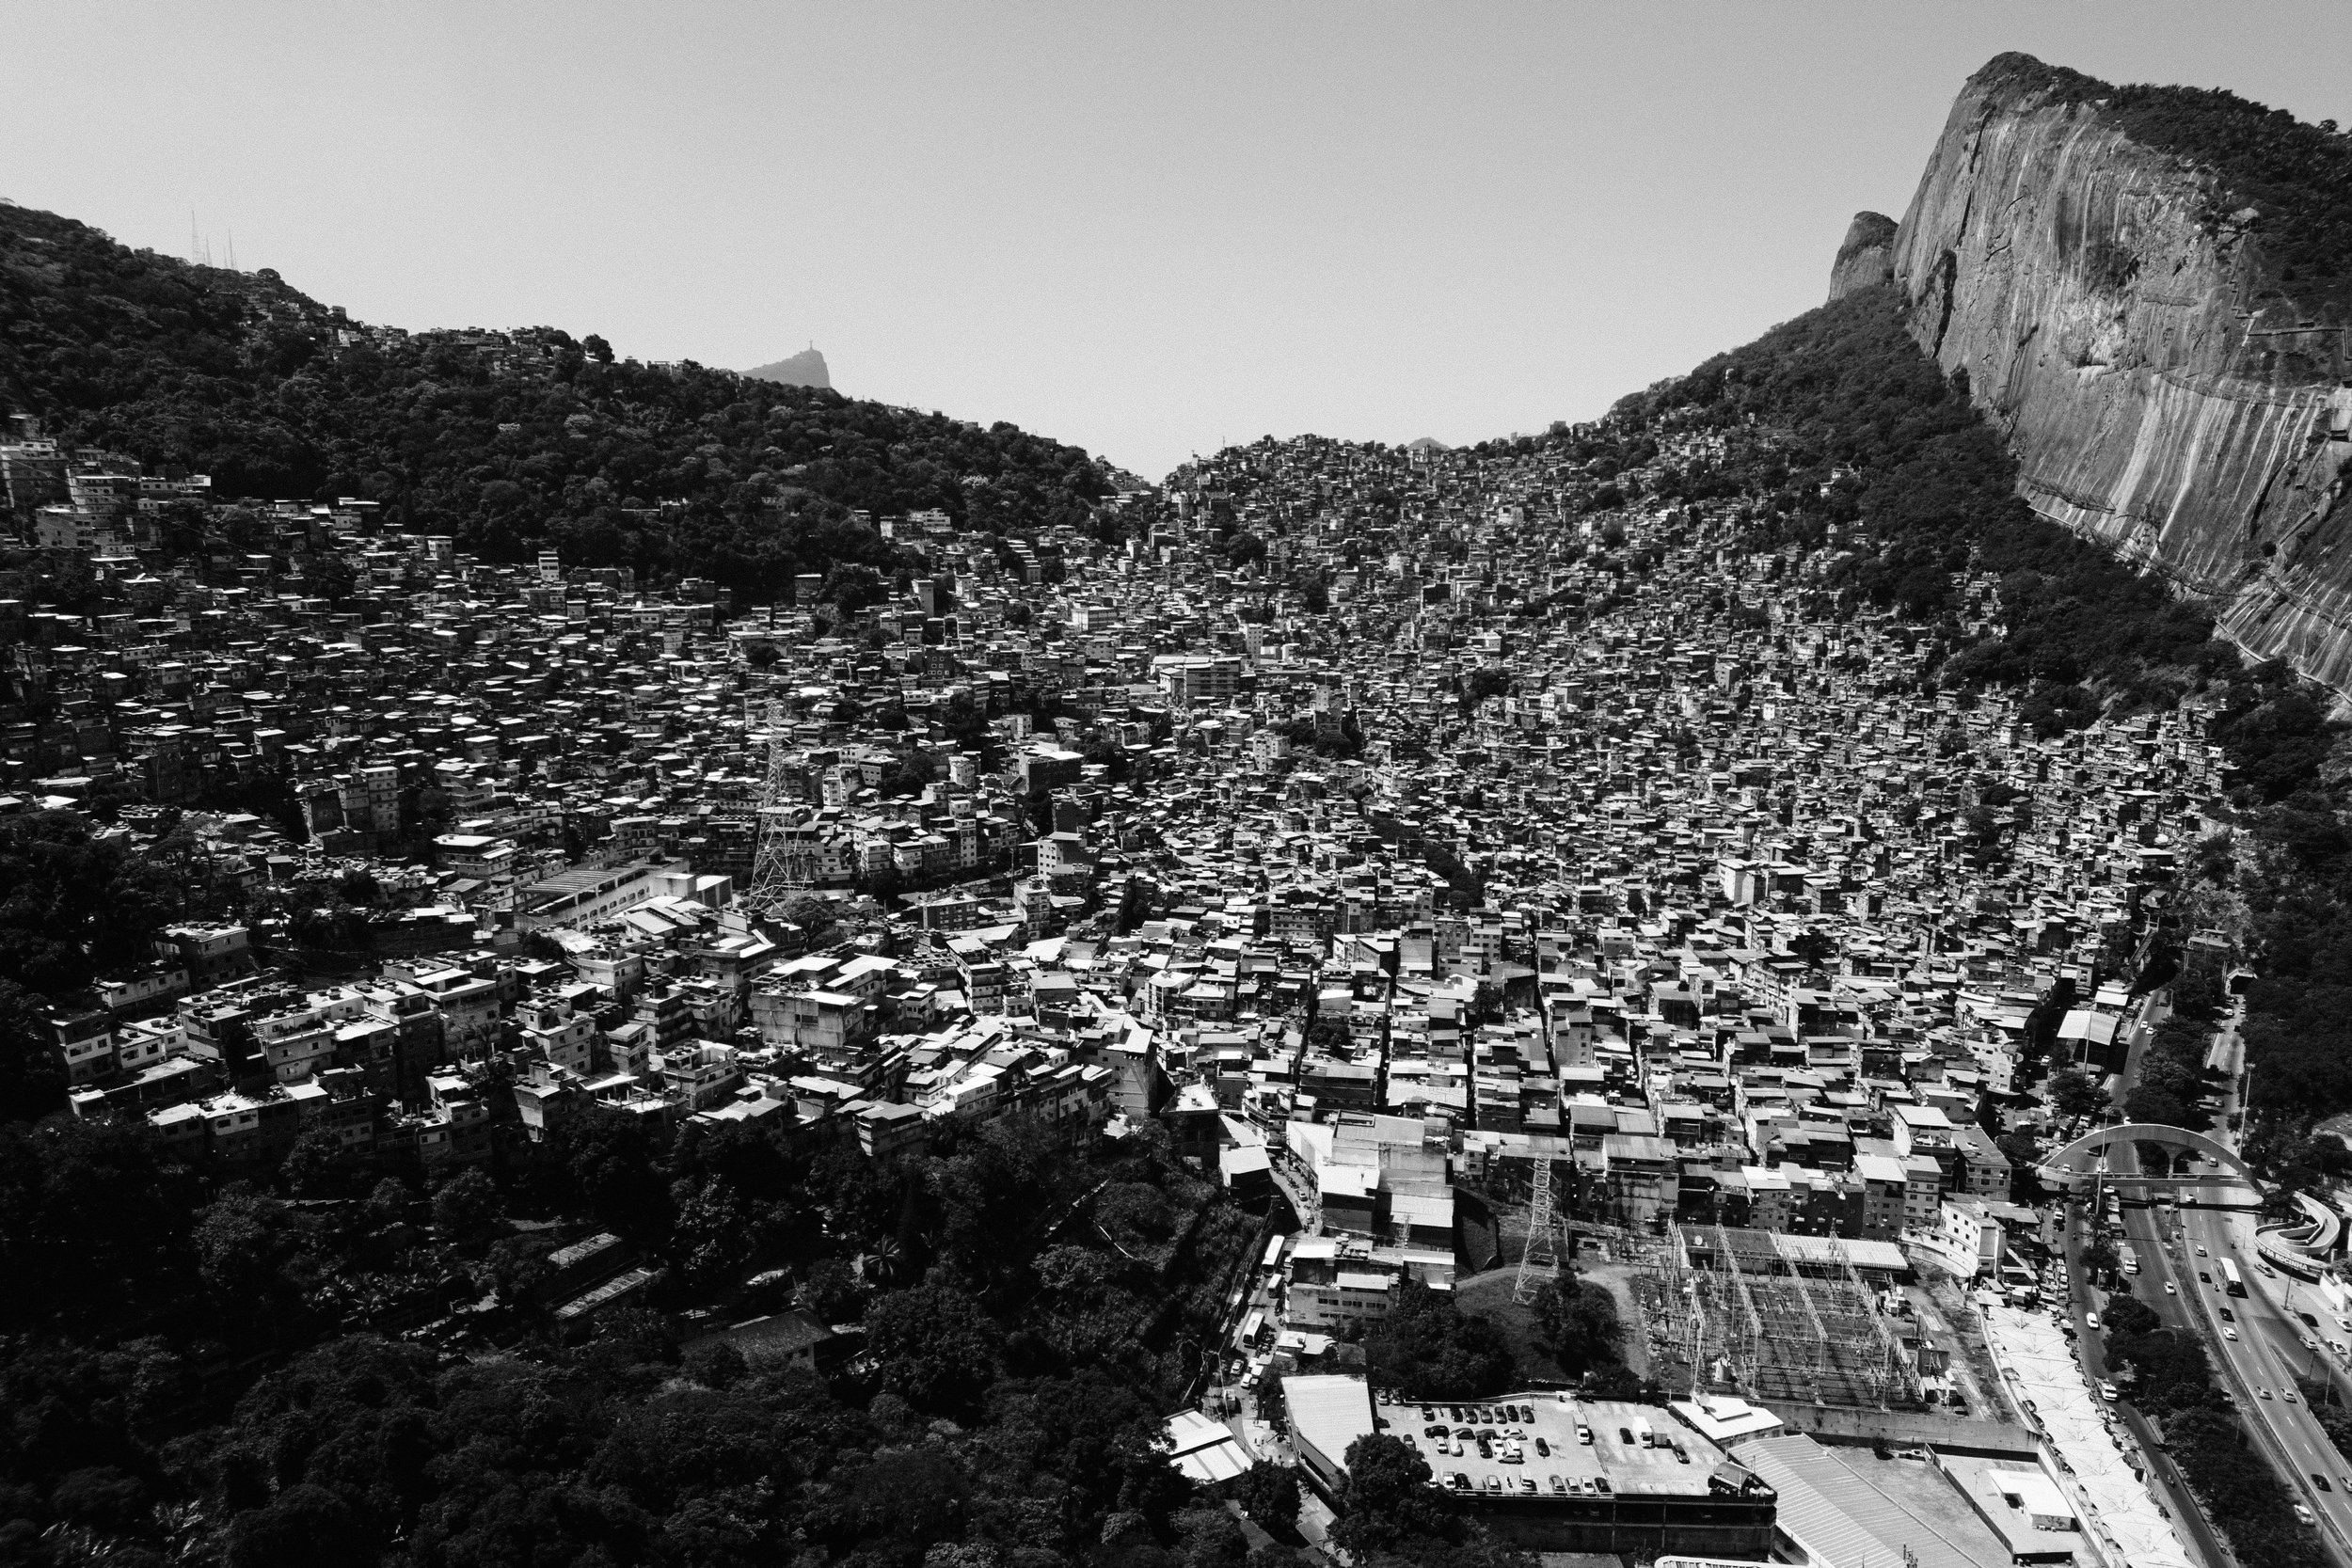 favela-da-rocinha-rio-de-janeiro-guia-turistico-para-favela-ricardo-franzen-producao-de-filme-documentario-educacao-na-favela-rio-de-janeiro-rocinha-4.jpg